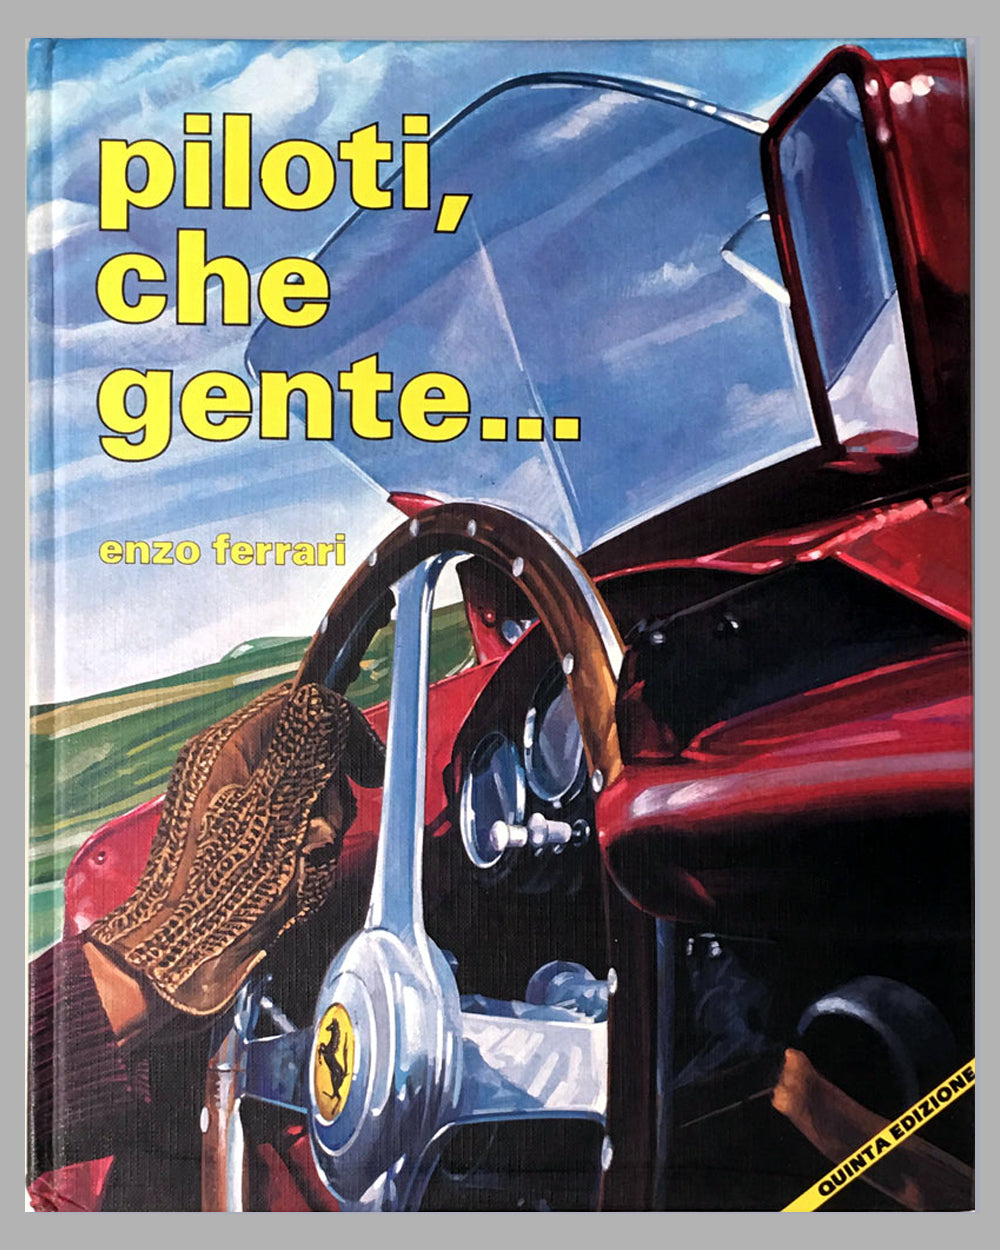 Piloti, che gente book by Enzo Ferrari, 1989